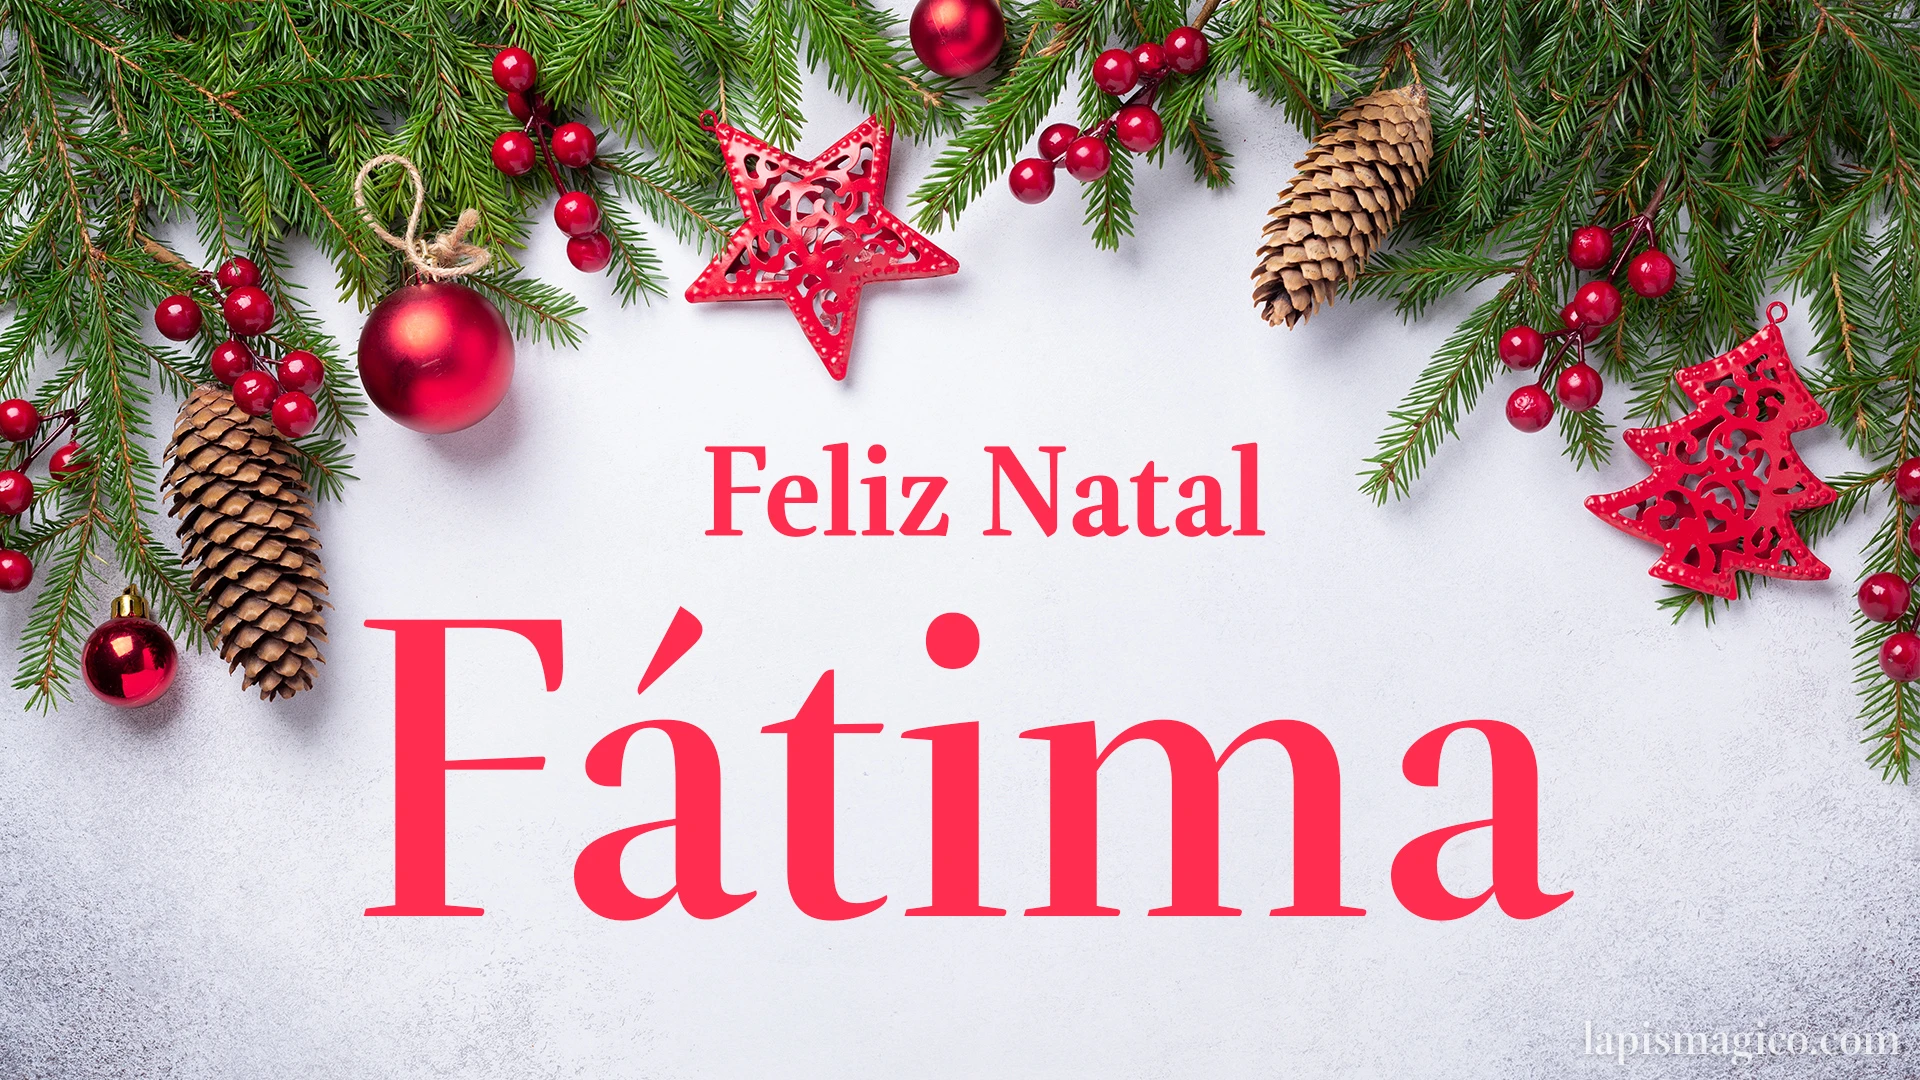 Oh Fátima, cinco postais de Feliz Natal Postal com o teu nome